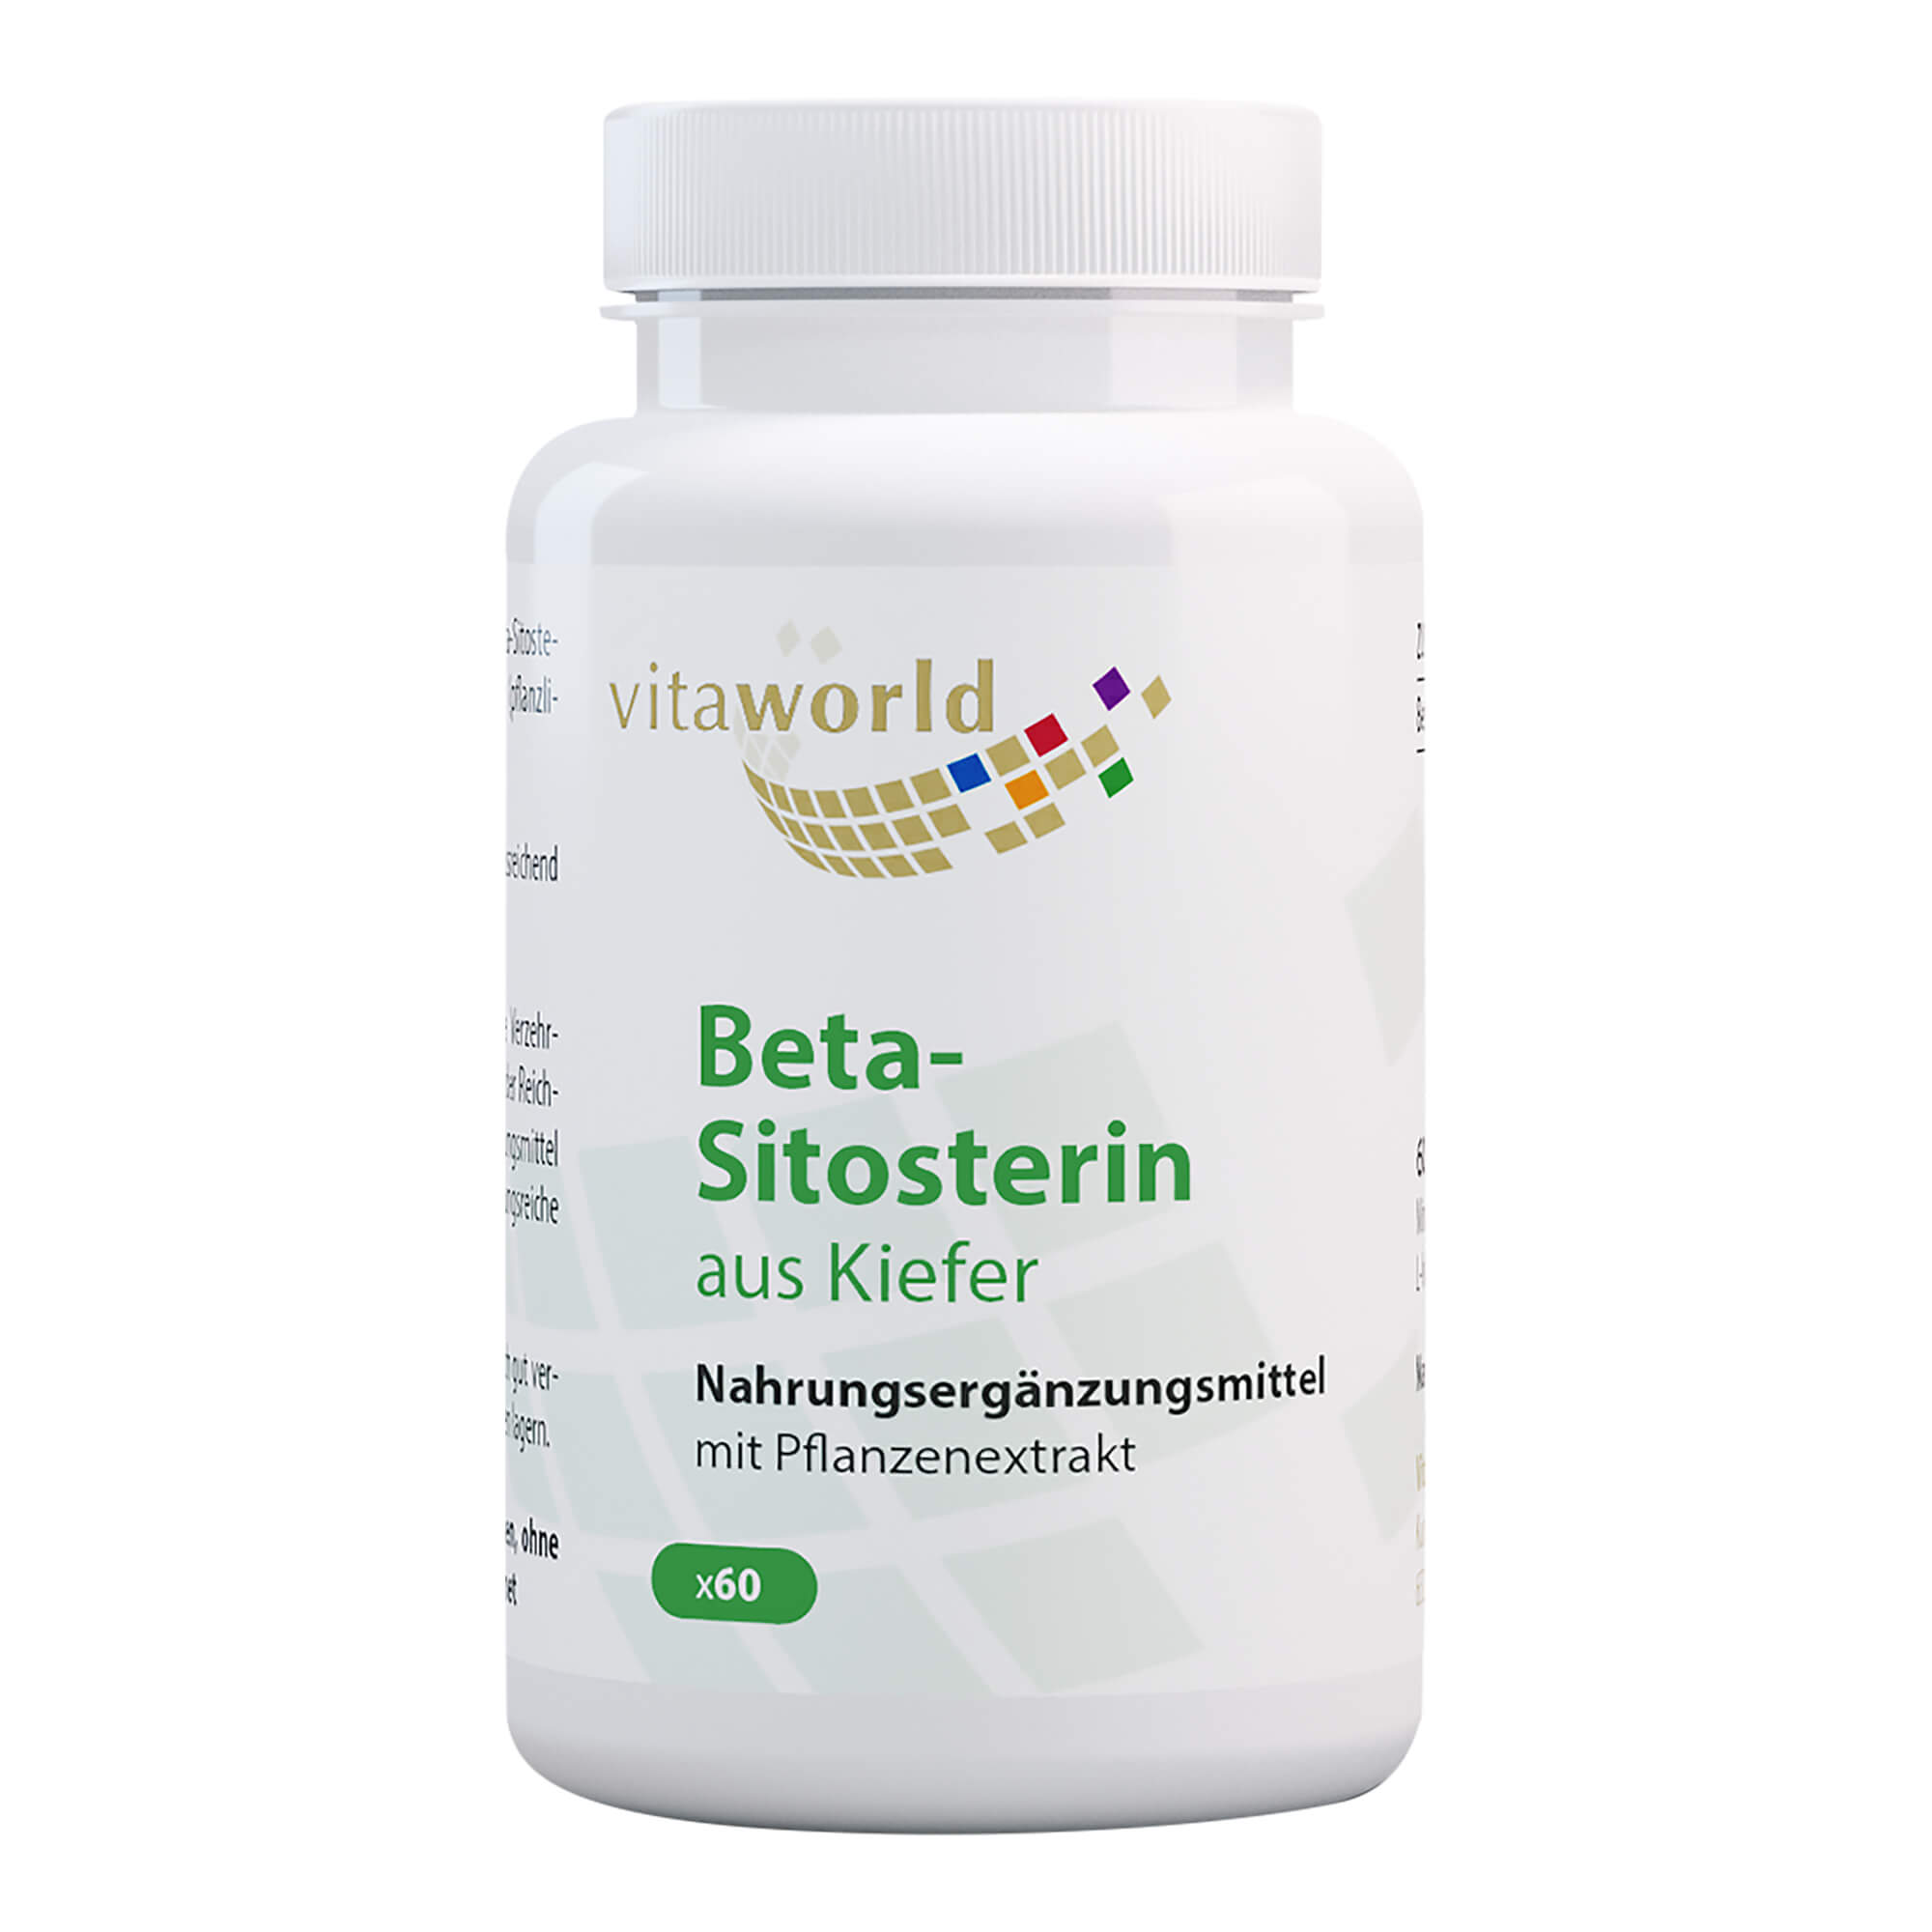 Nahrungsergänzungsmittel mit hochdosiertem Beta-Sitosterin aus Kiefer.